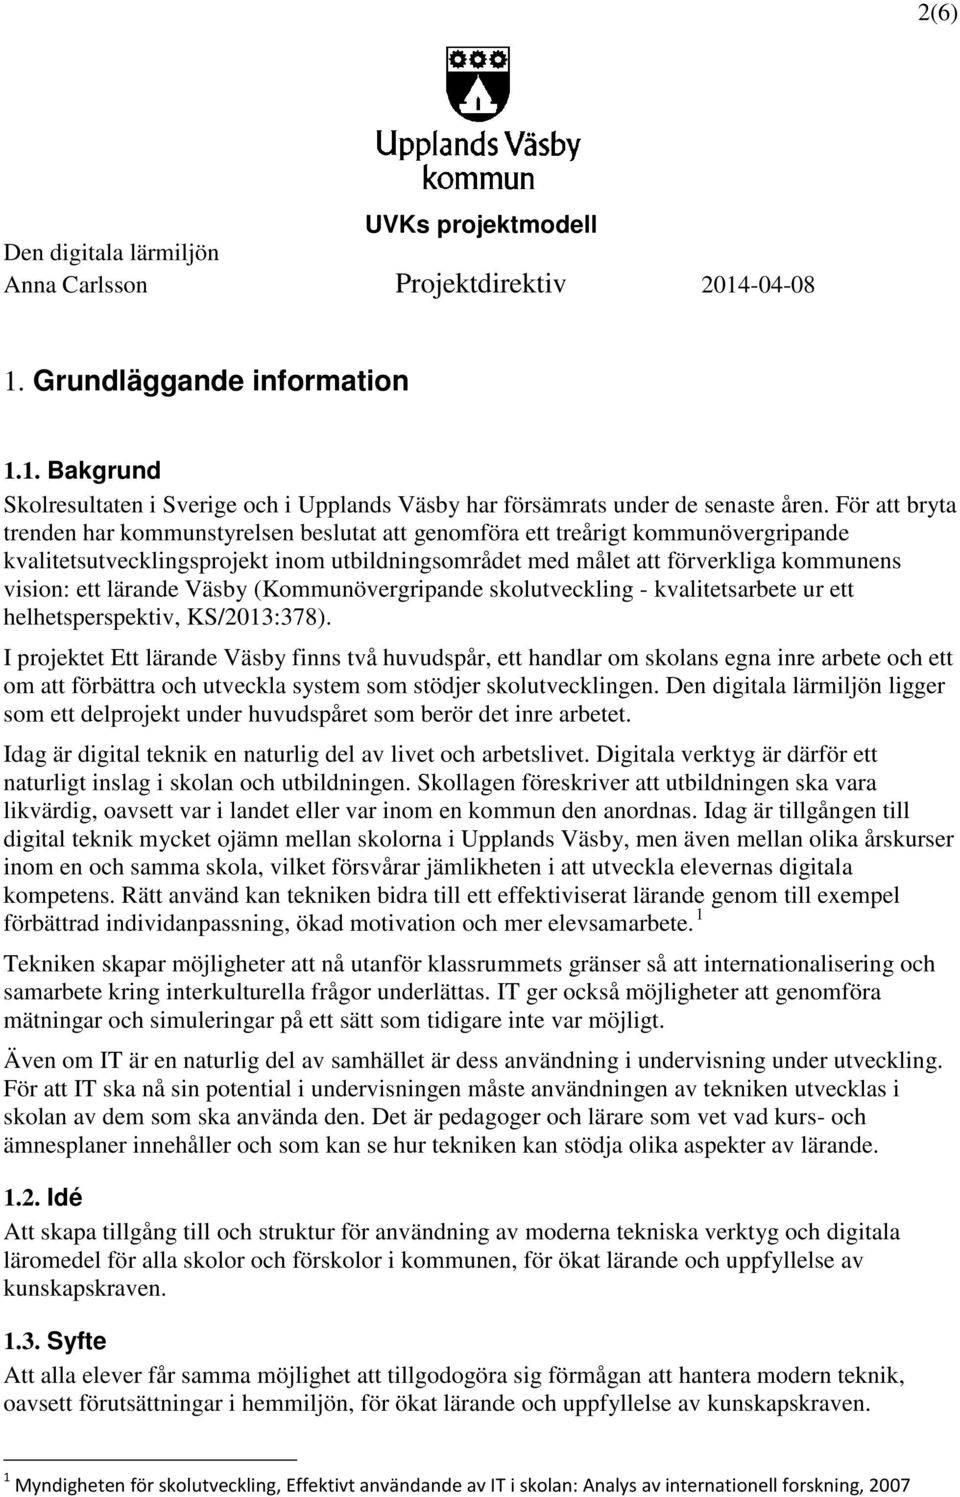 lärande Väsby (Kommunövergripande skolutveckling - kvalitetsarbete ur ett helhetsperspektiv, KS/2013:378).